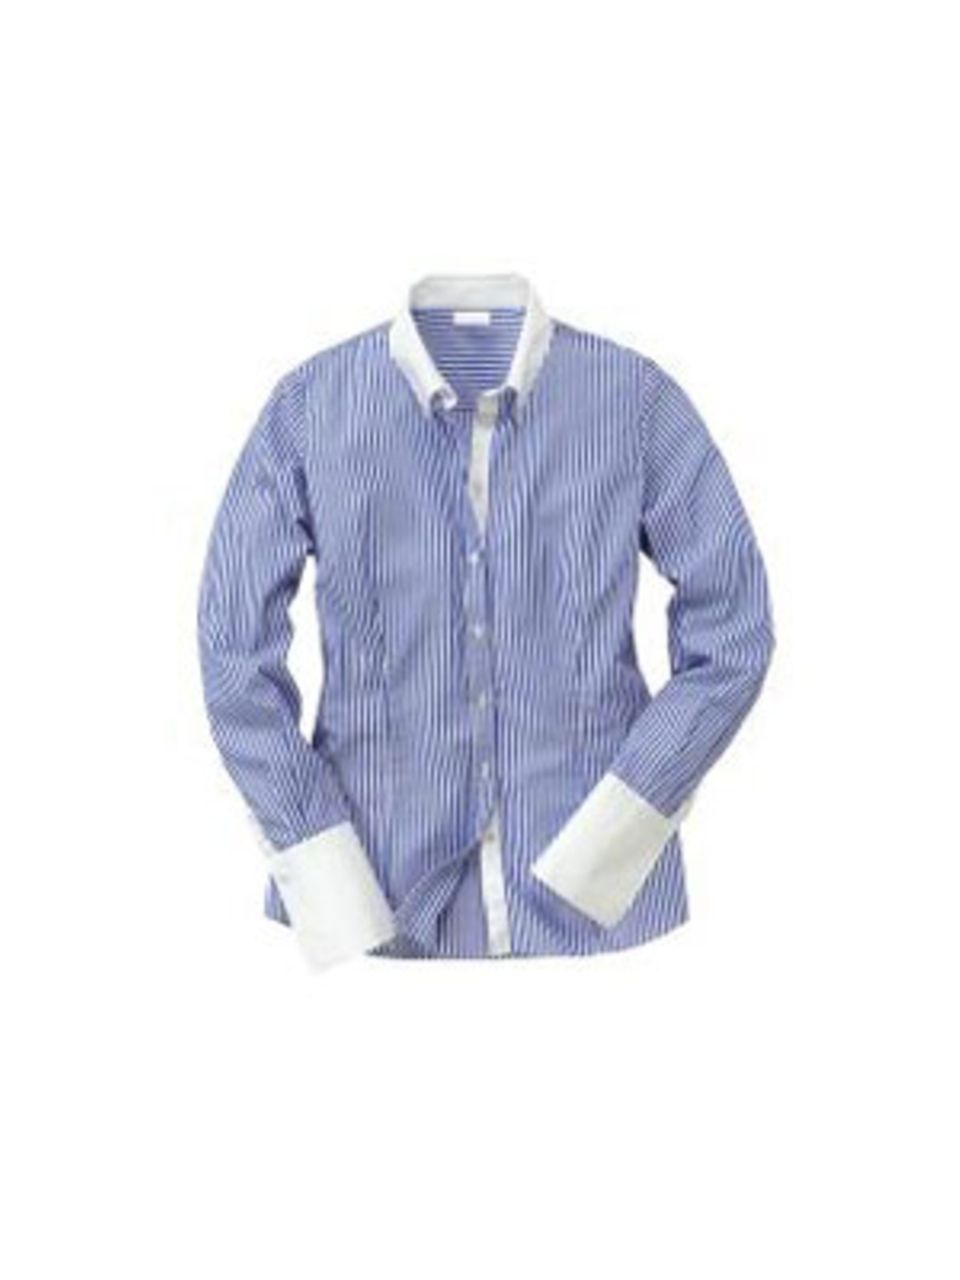 Klassische Bluse mit feinen blauen Streifen zu weißem Kragen und Armbündchen von Pureday, um 80 Euro. Über www.conleys.de.